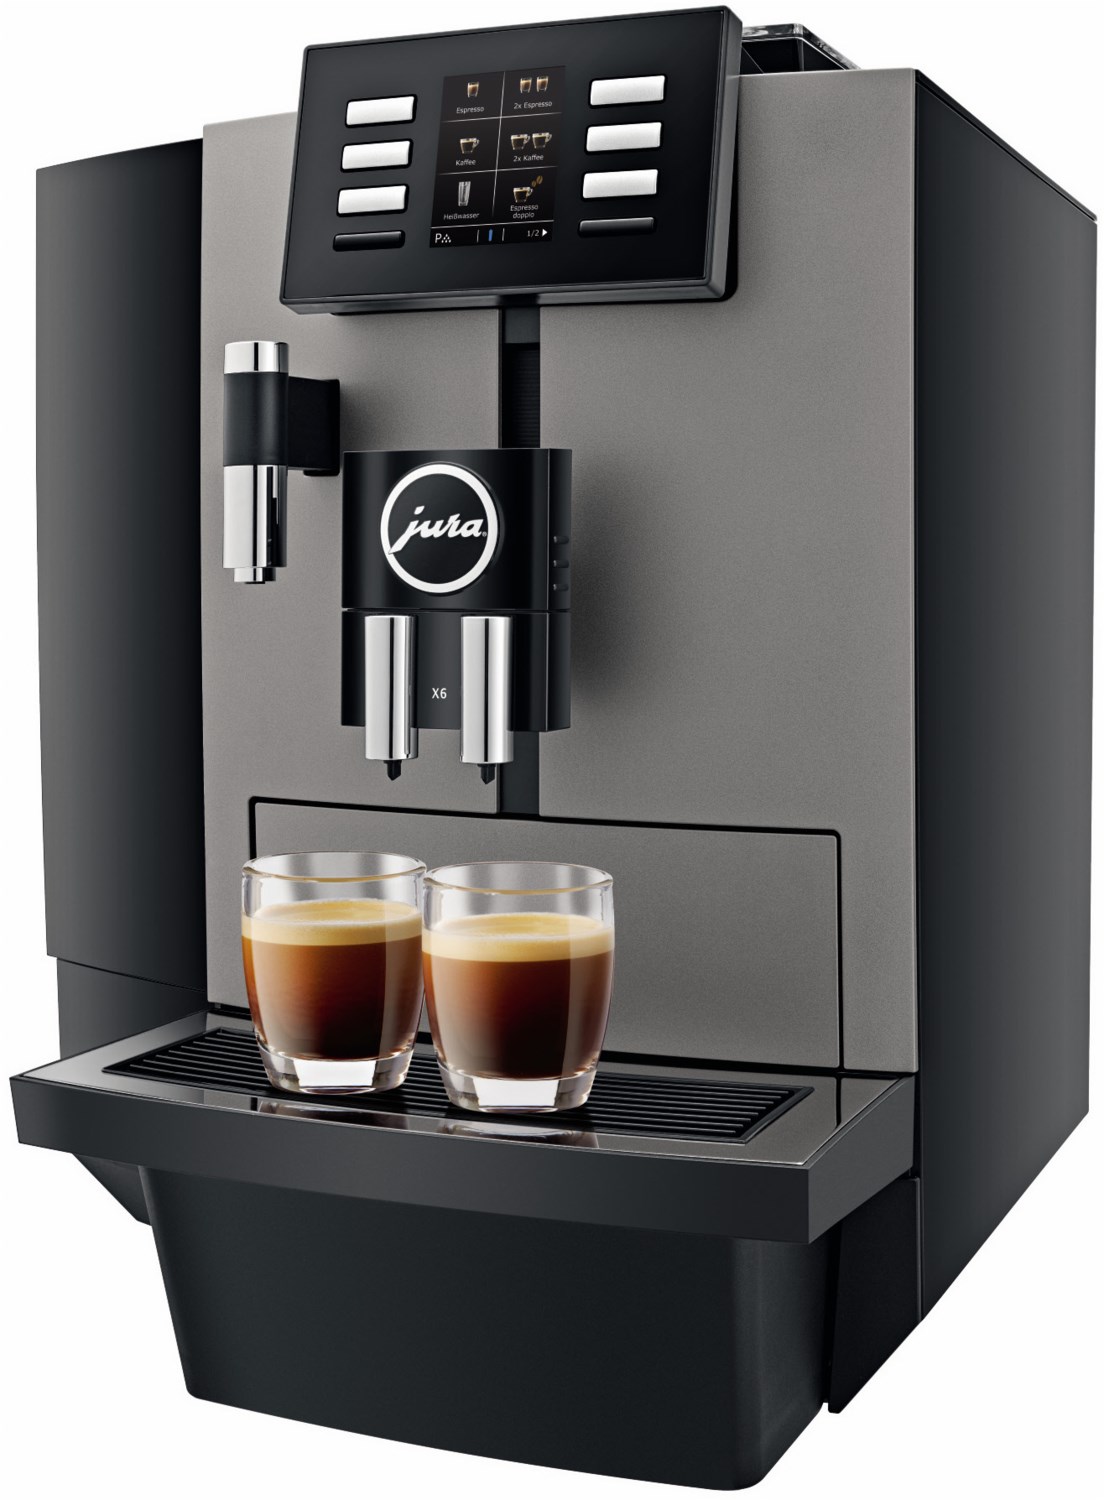 X6 Professional Kaffee-Vollautomat dark inox von Jura